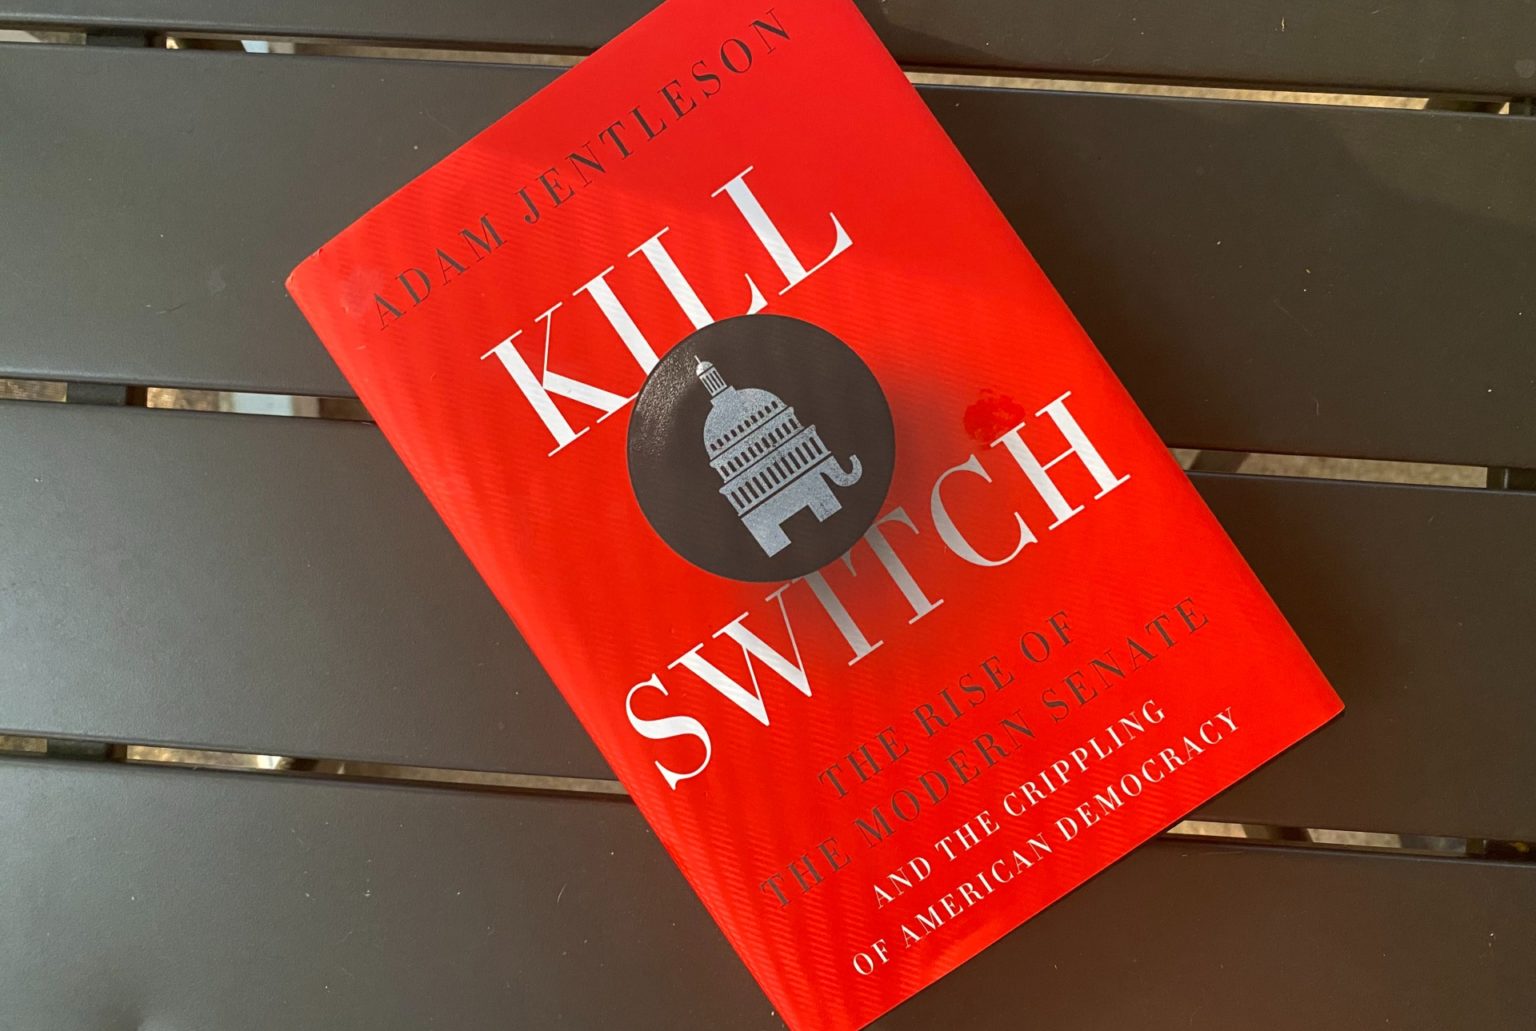 kill switch book senate